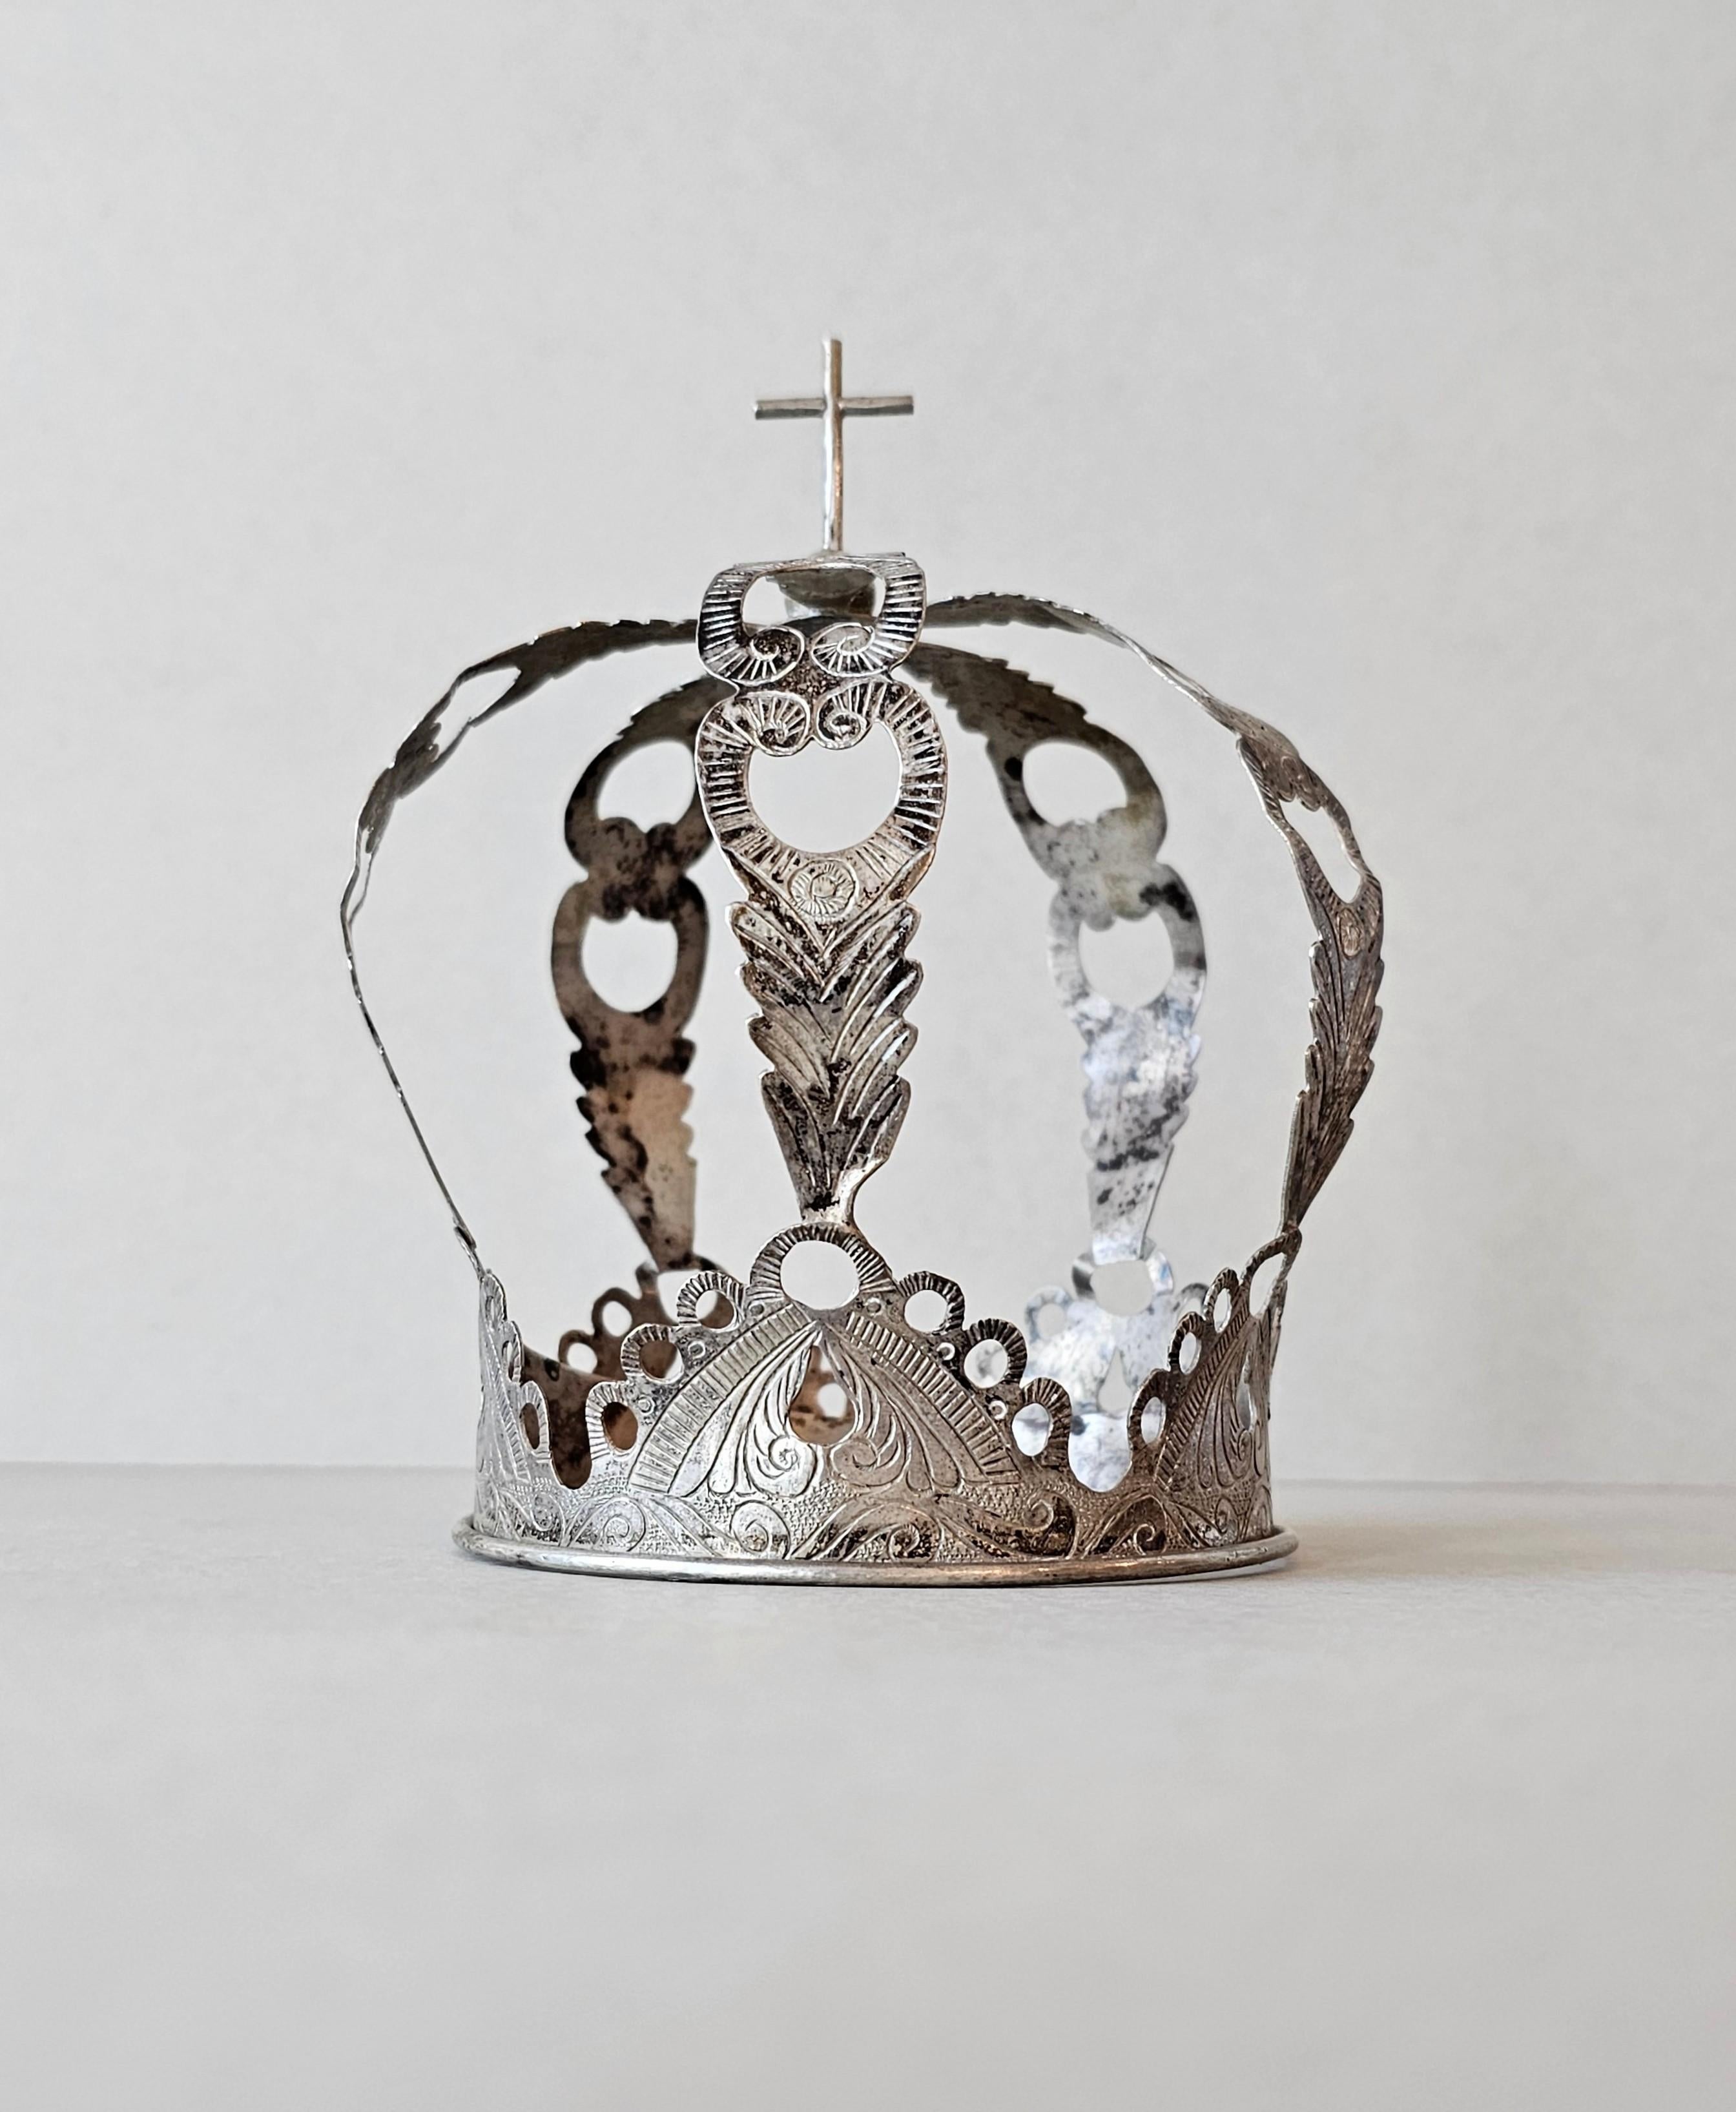 Rare couronne de saint en argent de style Coloni du XIXe siècle, destinée à être montée sur la tête d'un personnage d'autel d'église, avec un fleuron en forme de croix, des arcs percés avec un motif de feuillage et une ornementation finement gravée.